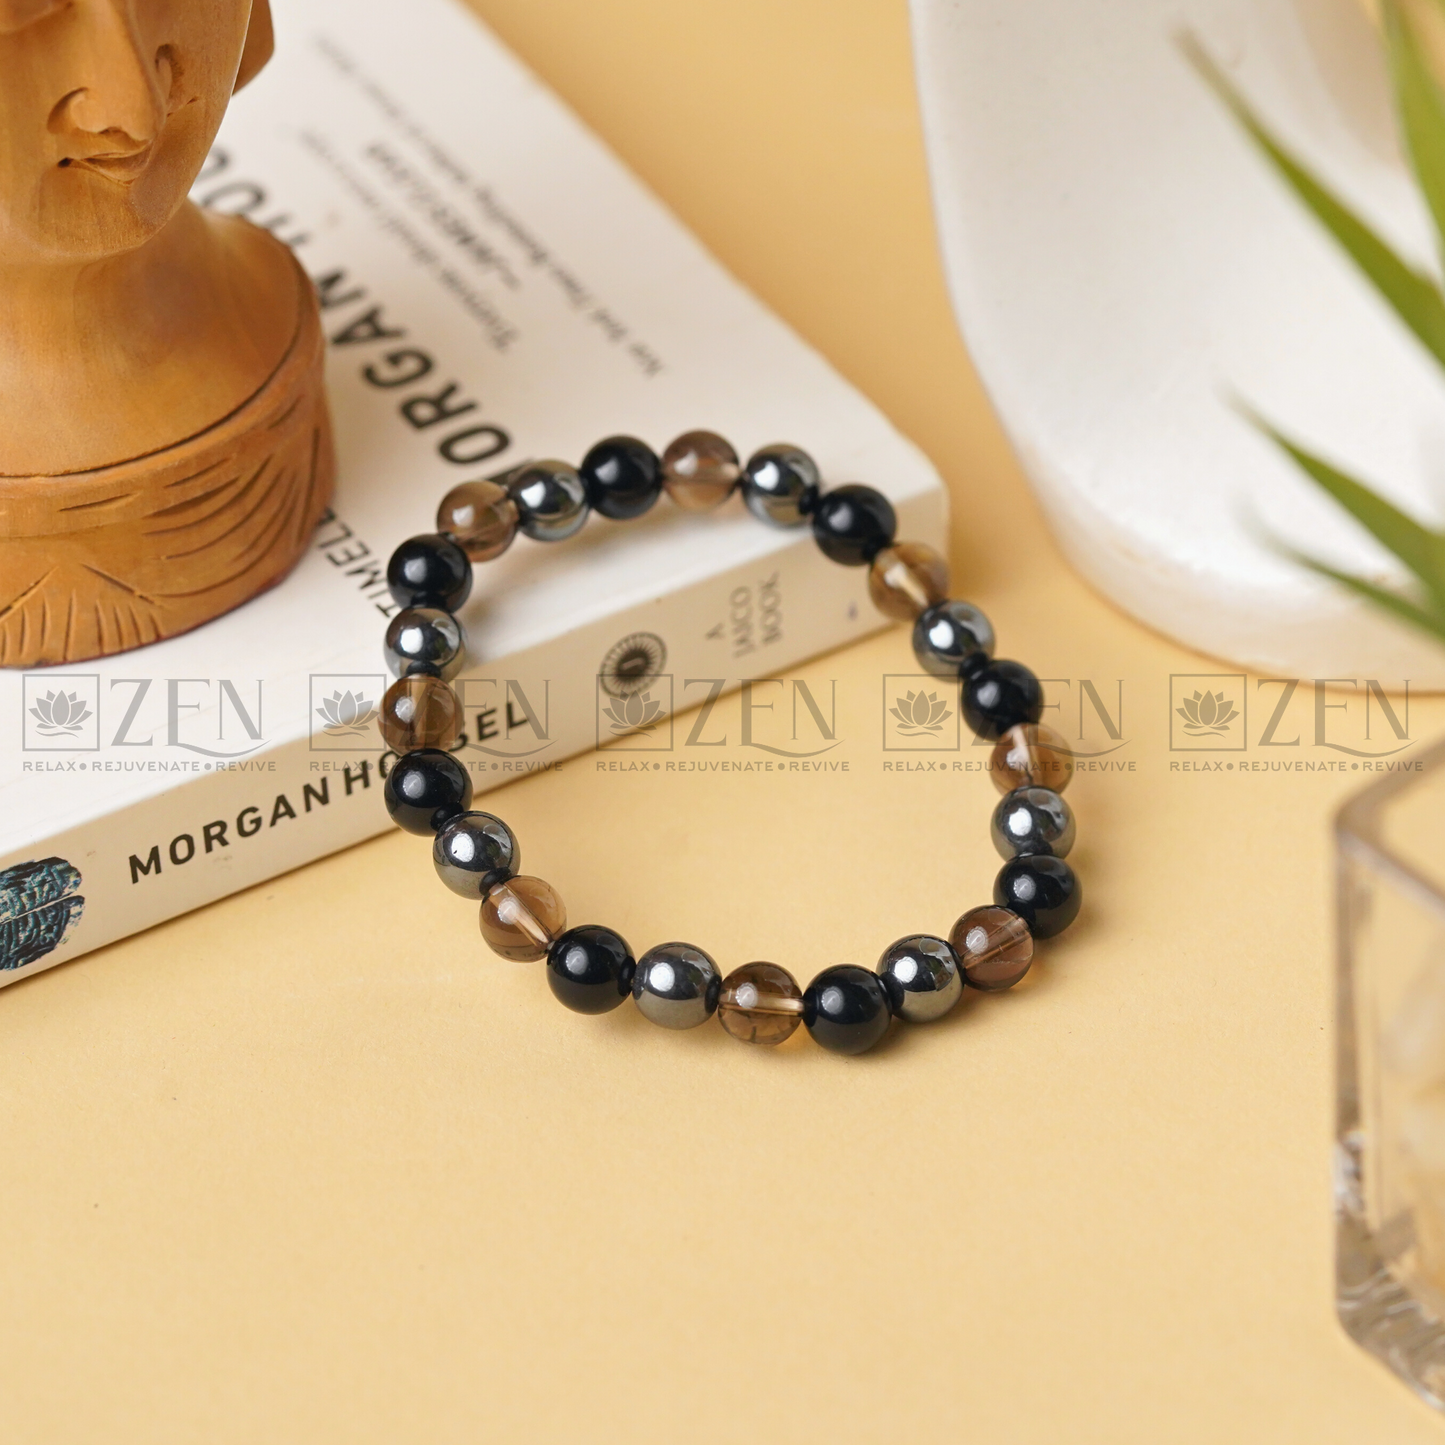 Zen Travel Protection Bracelet The Zen Crystals